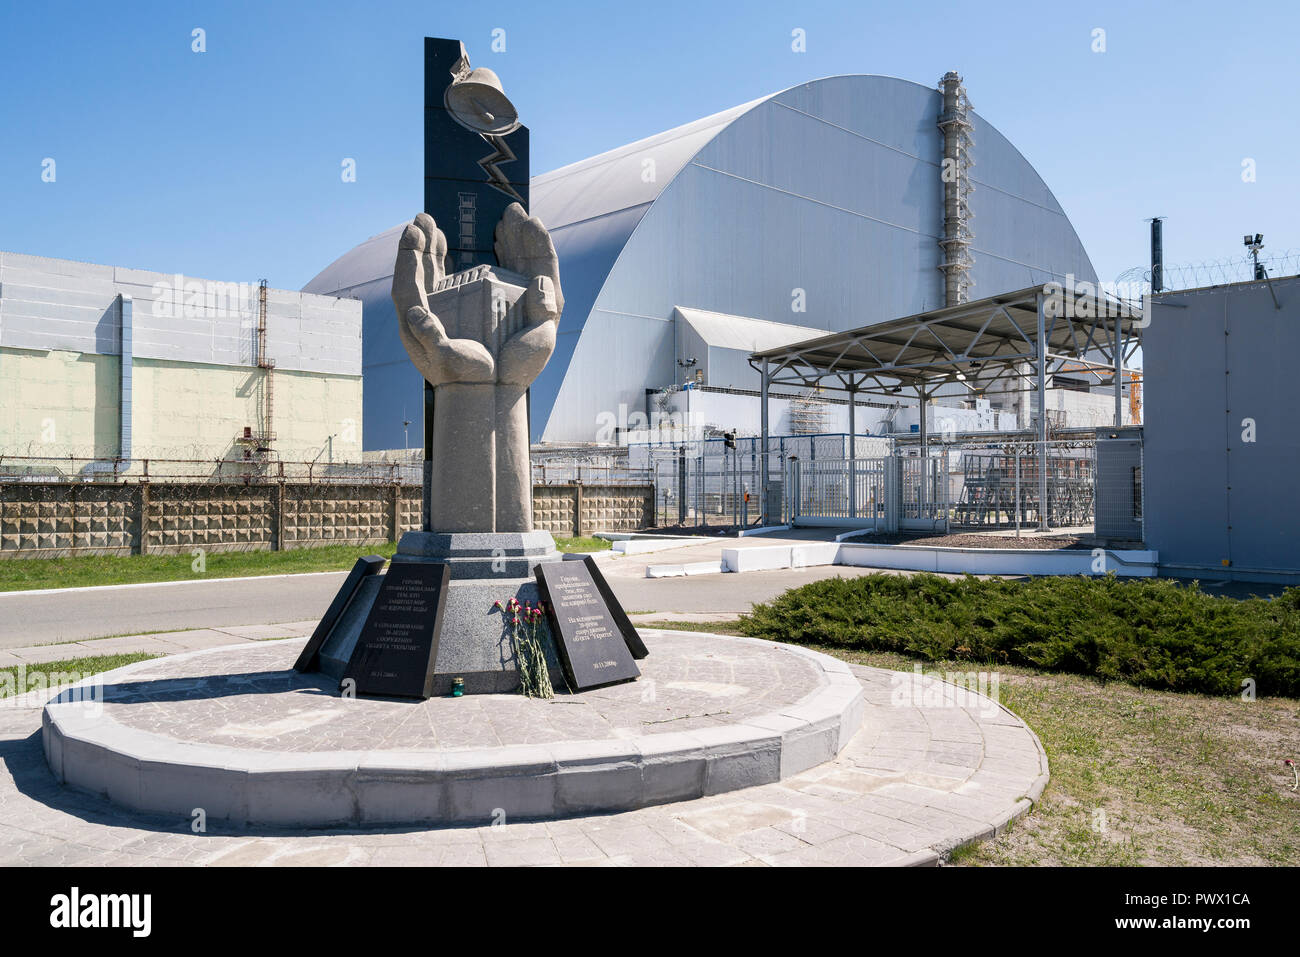 Des fleurs au monument devant le sarcophage, la structure d'acier et de béton couvrant le réacteur nucléaire n° 4 à Tchernobyl, en Ukraine. Banque D'Images